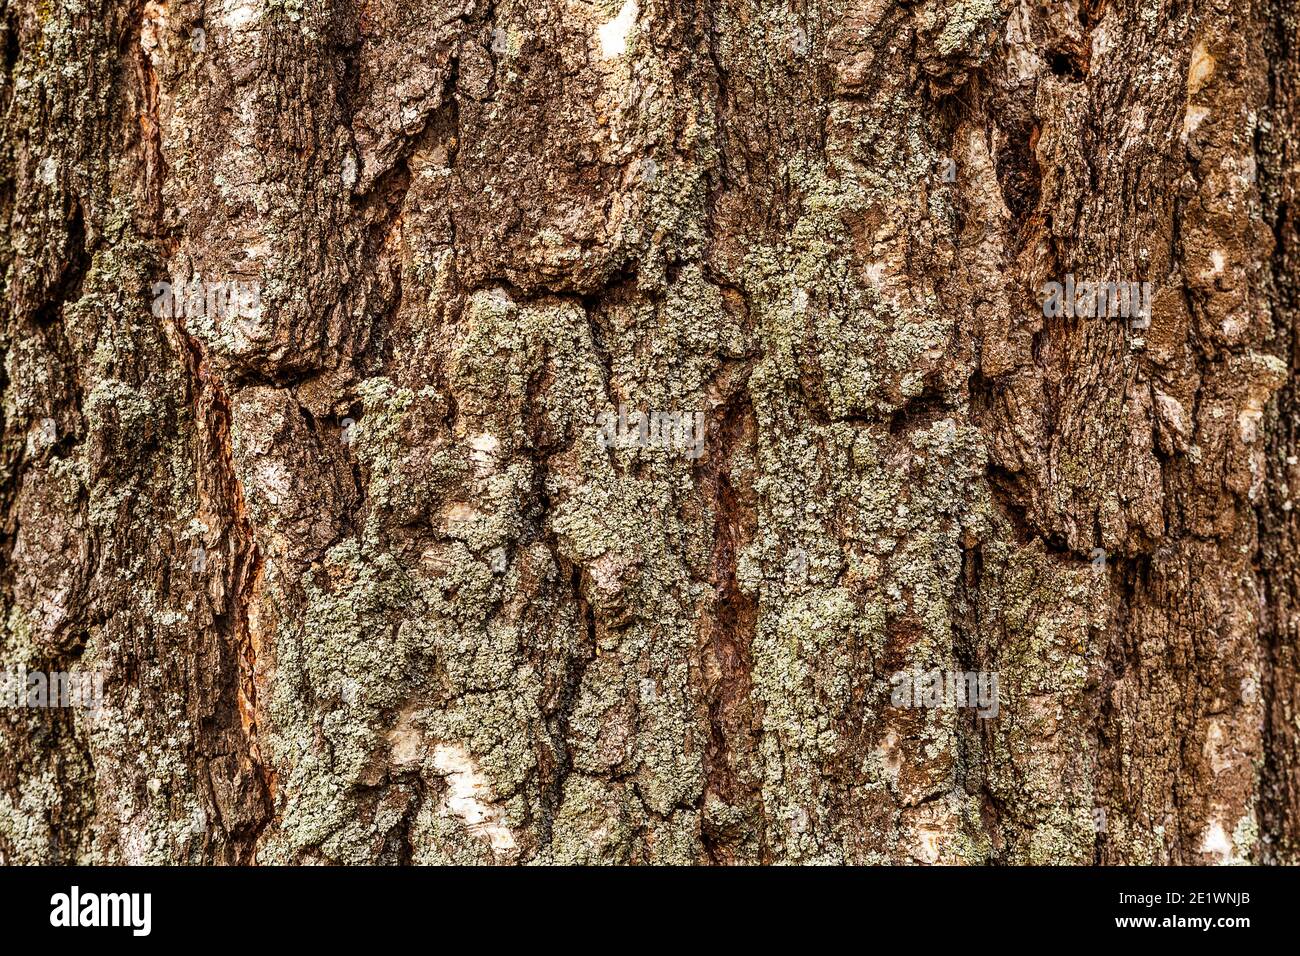 Holzstruktur Birke von dunkler, rauer Baumrinde braune Farbe  Stockfotografie - Alamy